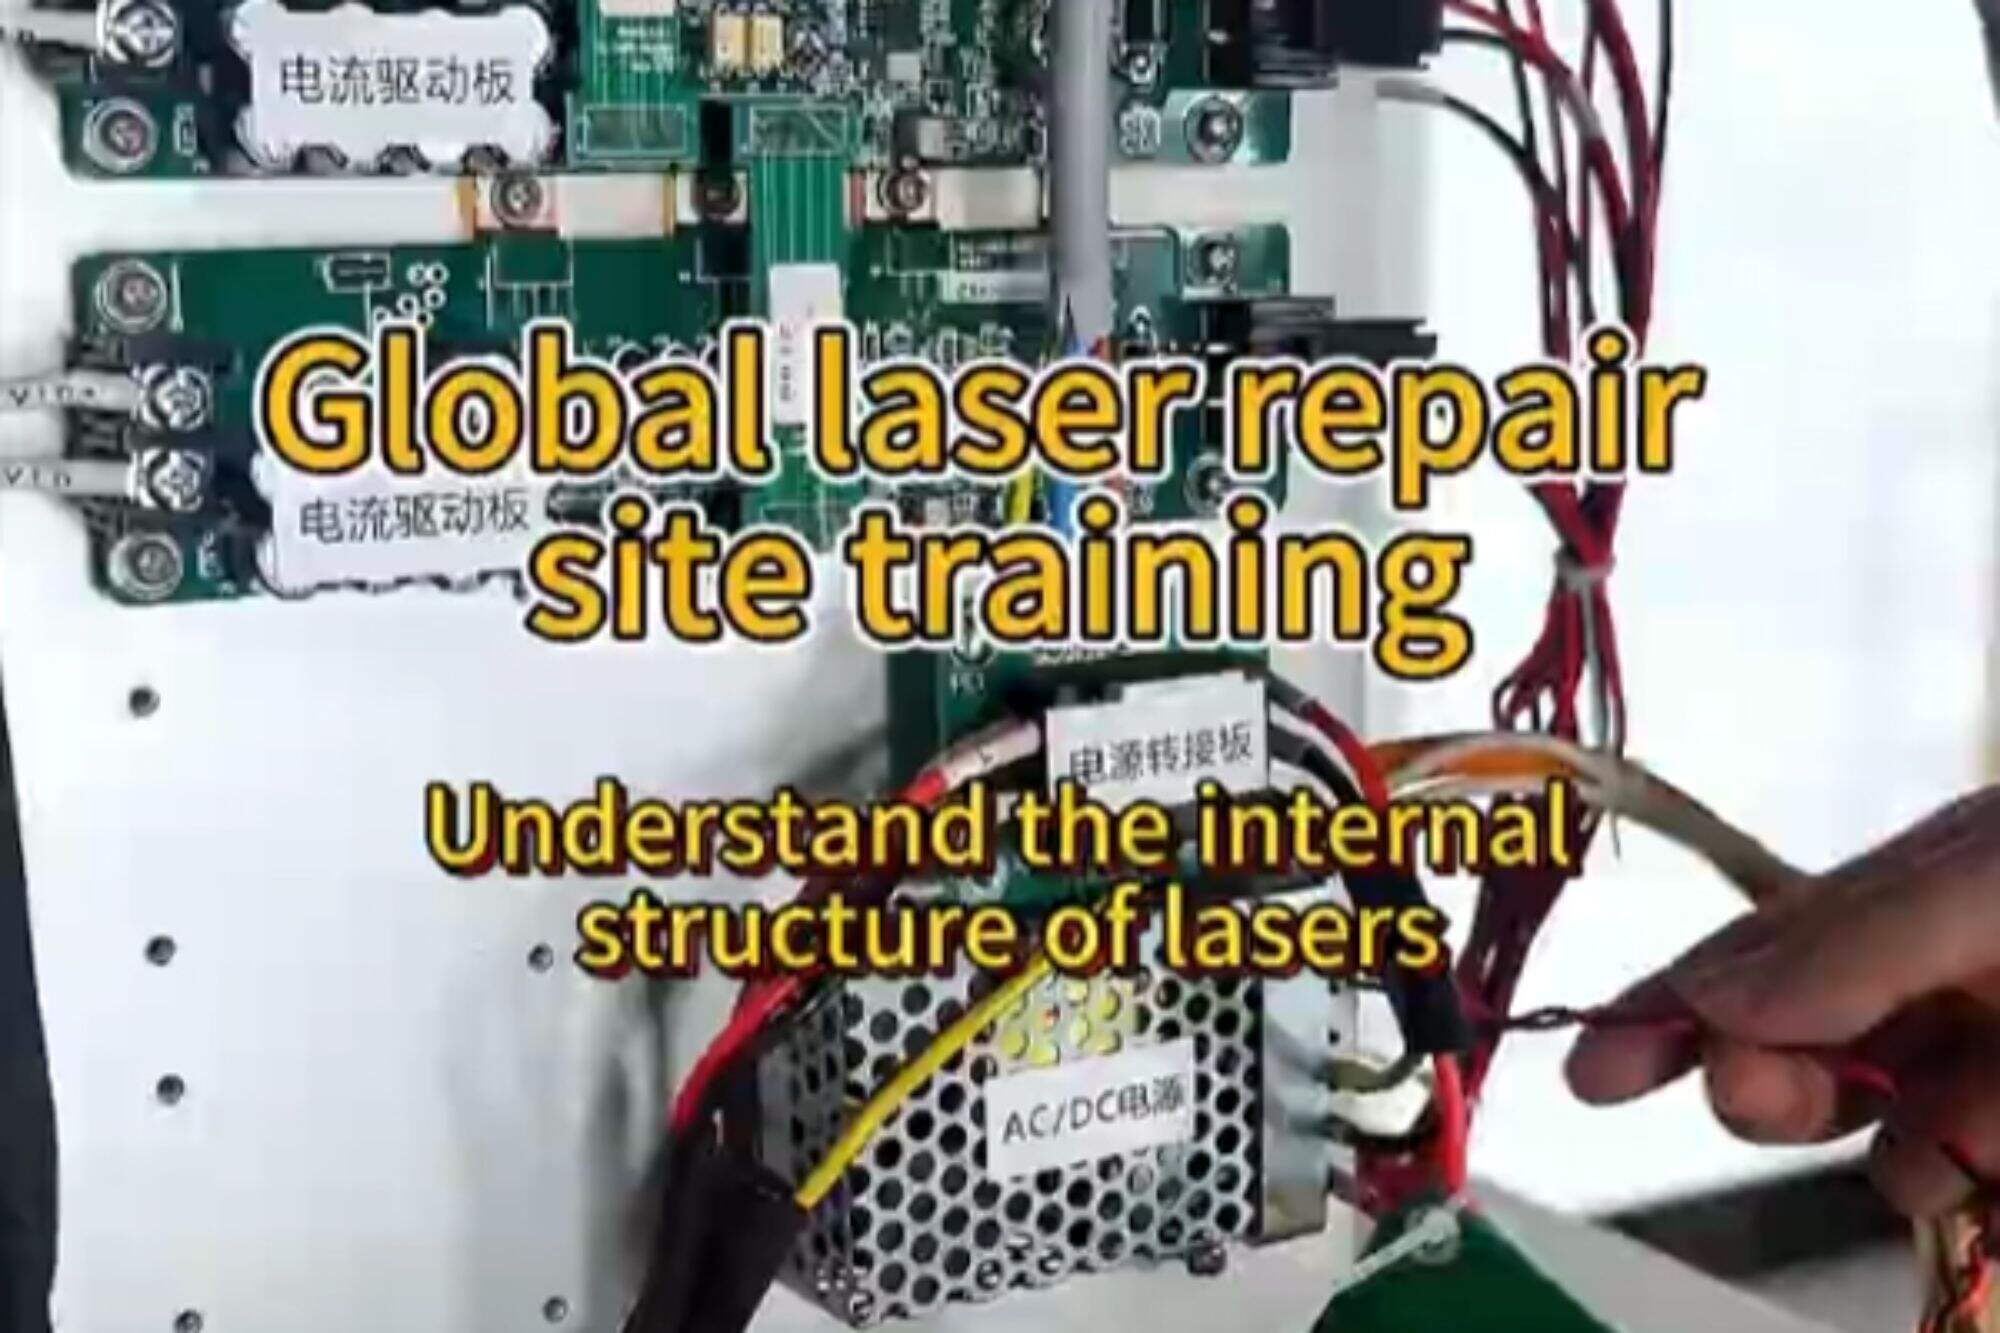 Reparatie van laserbronnen: leg de interne structuur van de laserbron uit